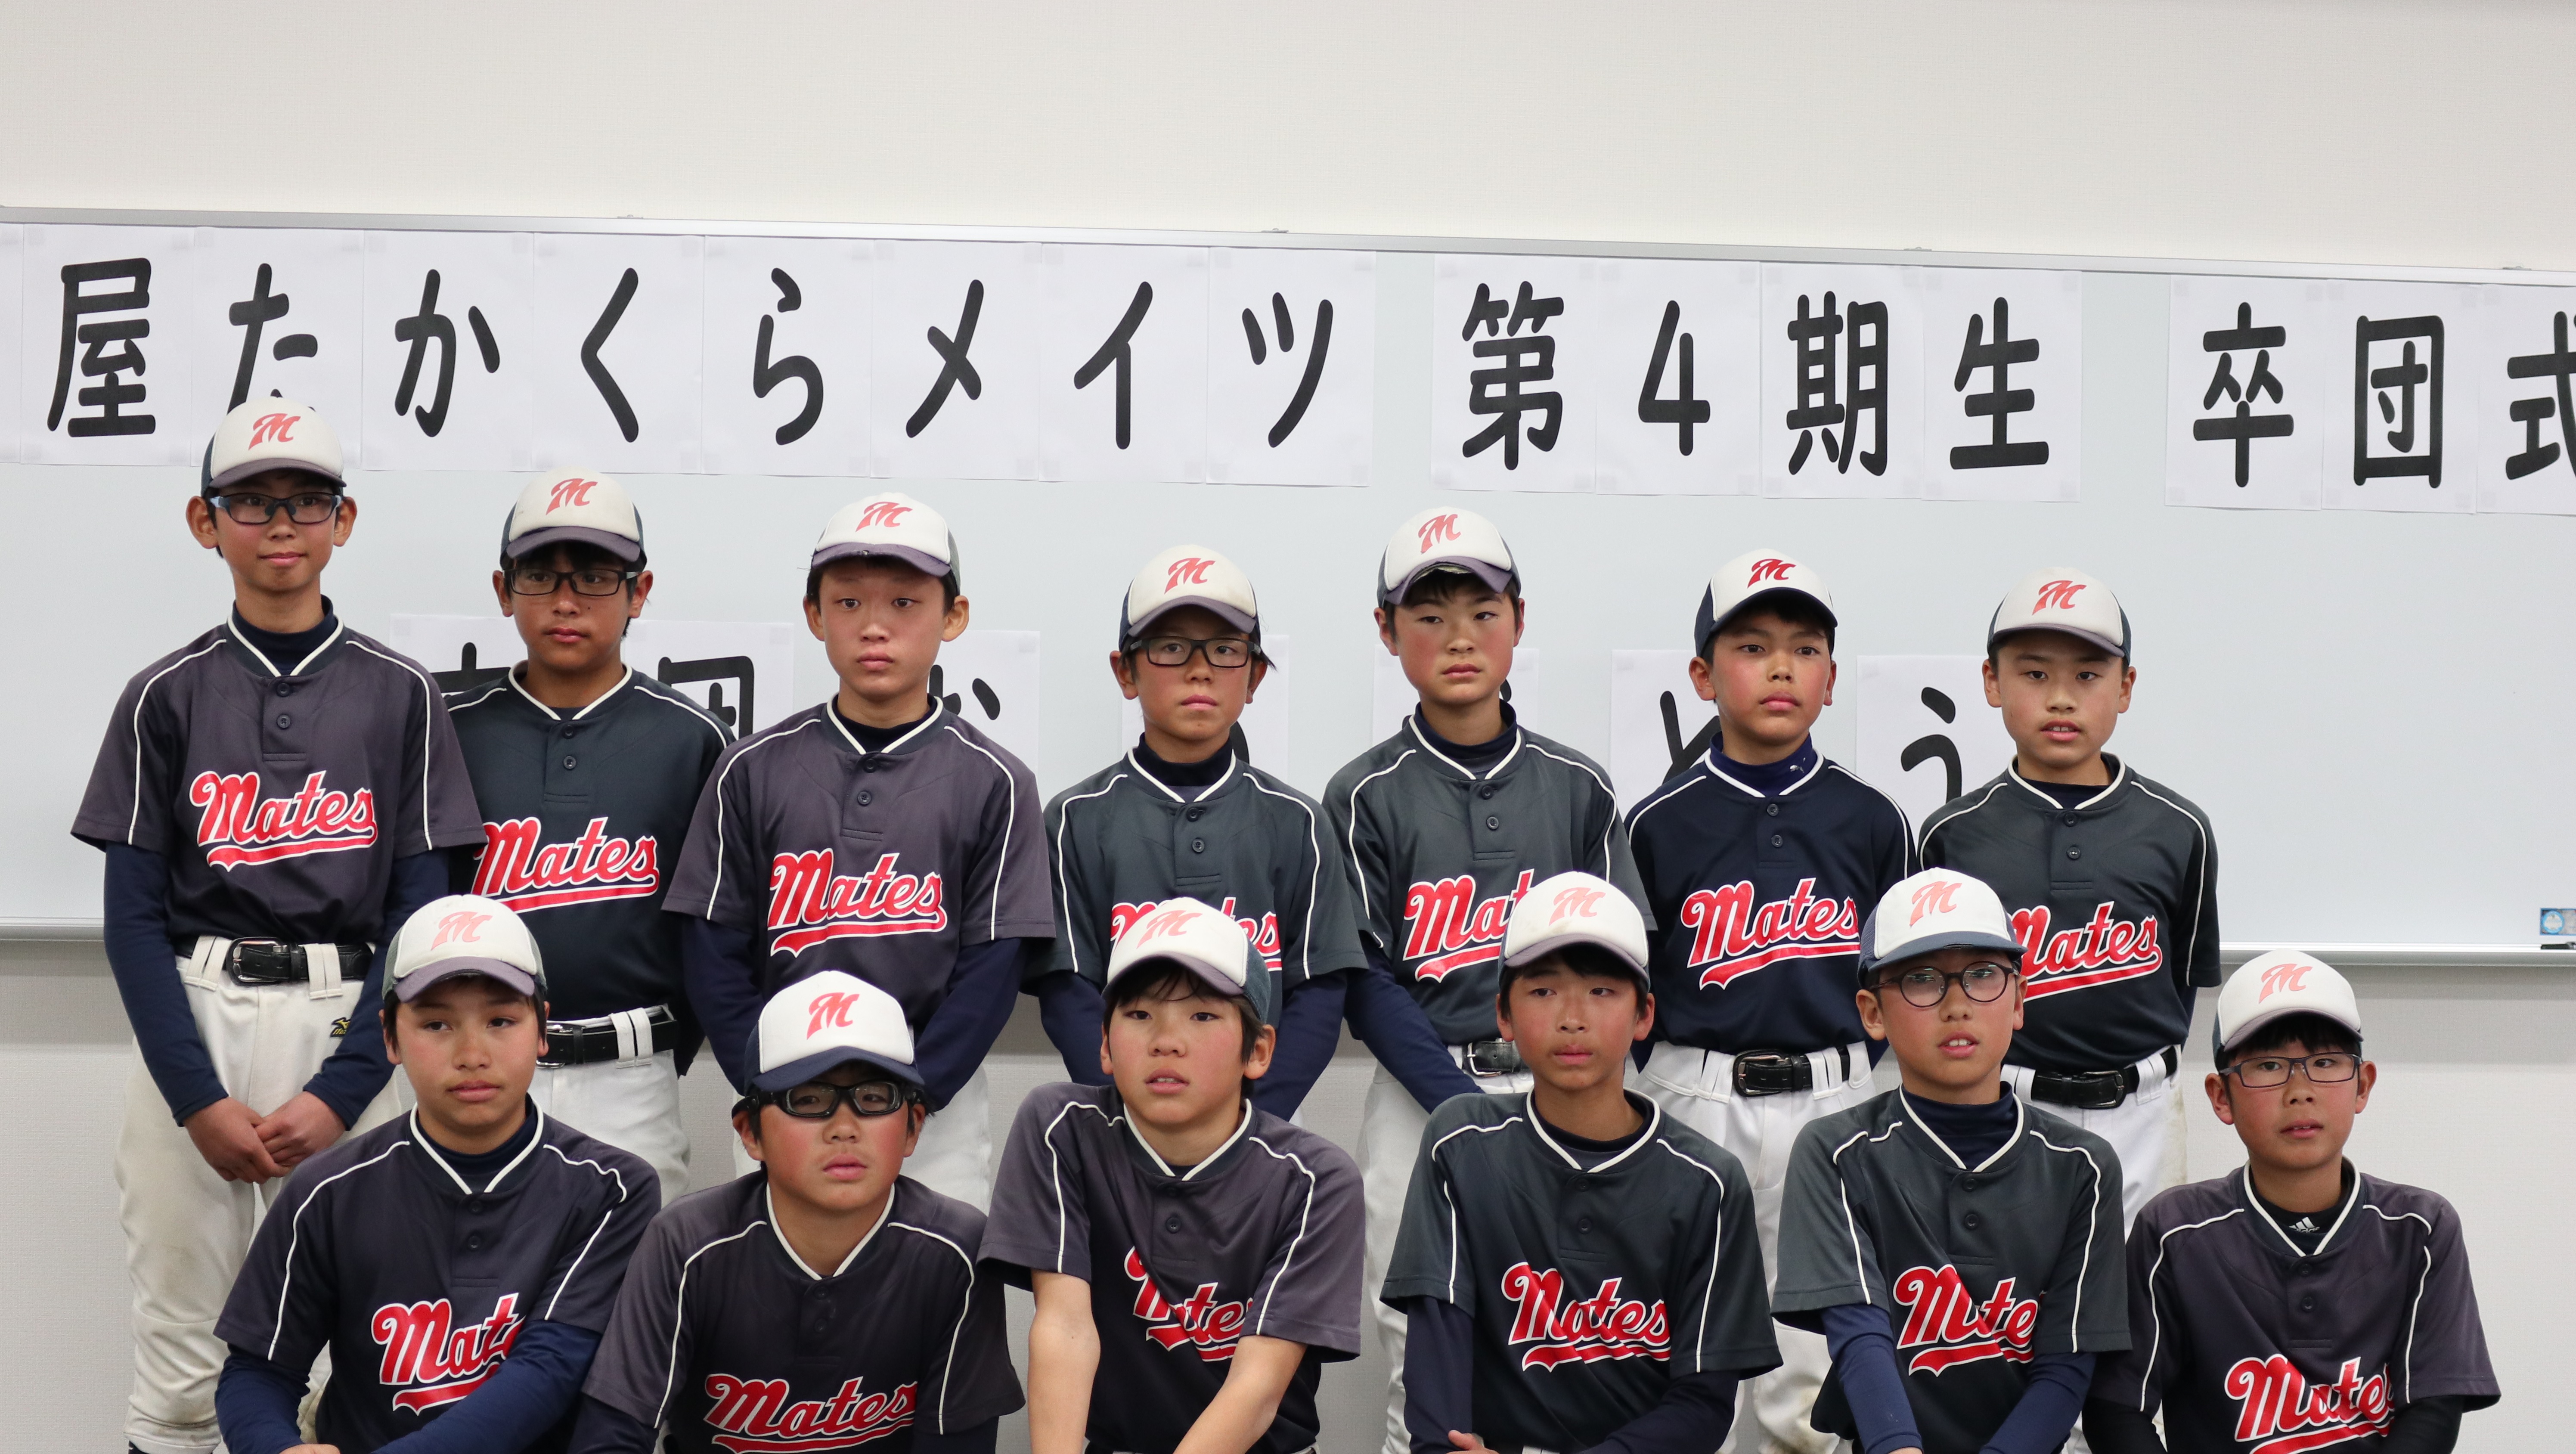 旗屋たかくらメイツ 熱田区 少年野球 ニュース 閲覧 第4期生の卒団式を行いました